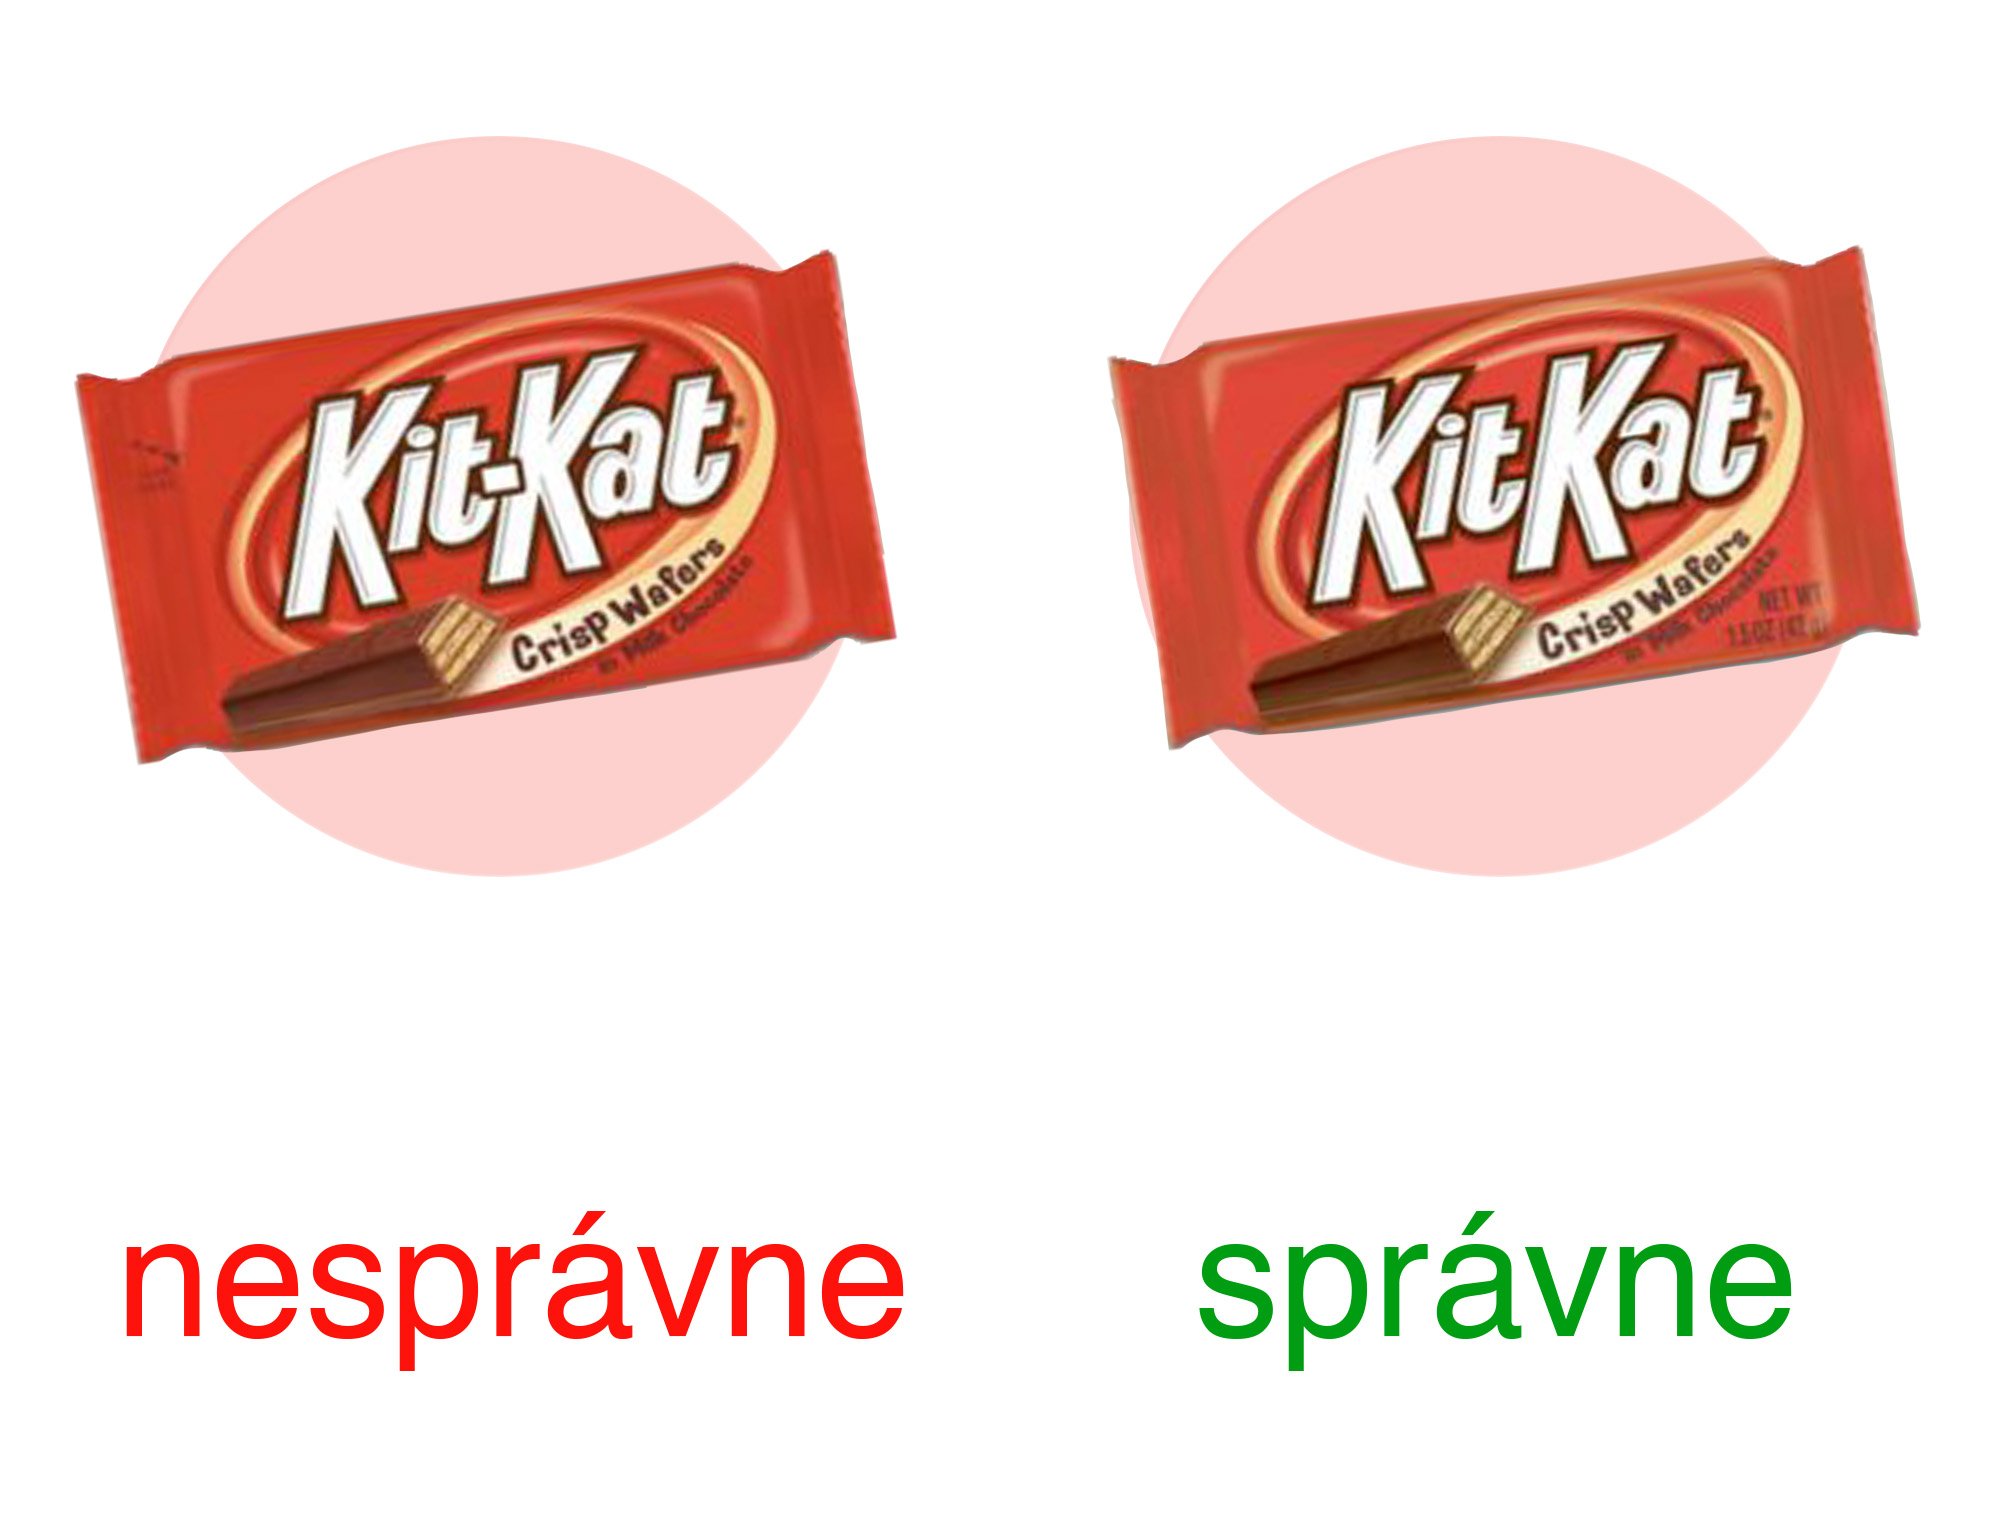 Logo KitKat